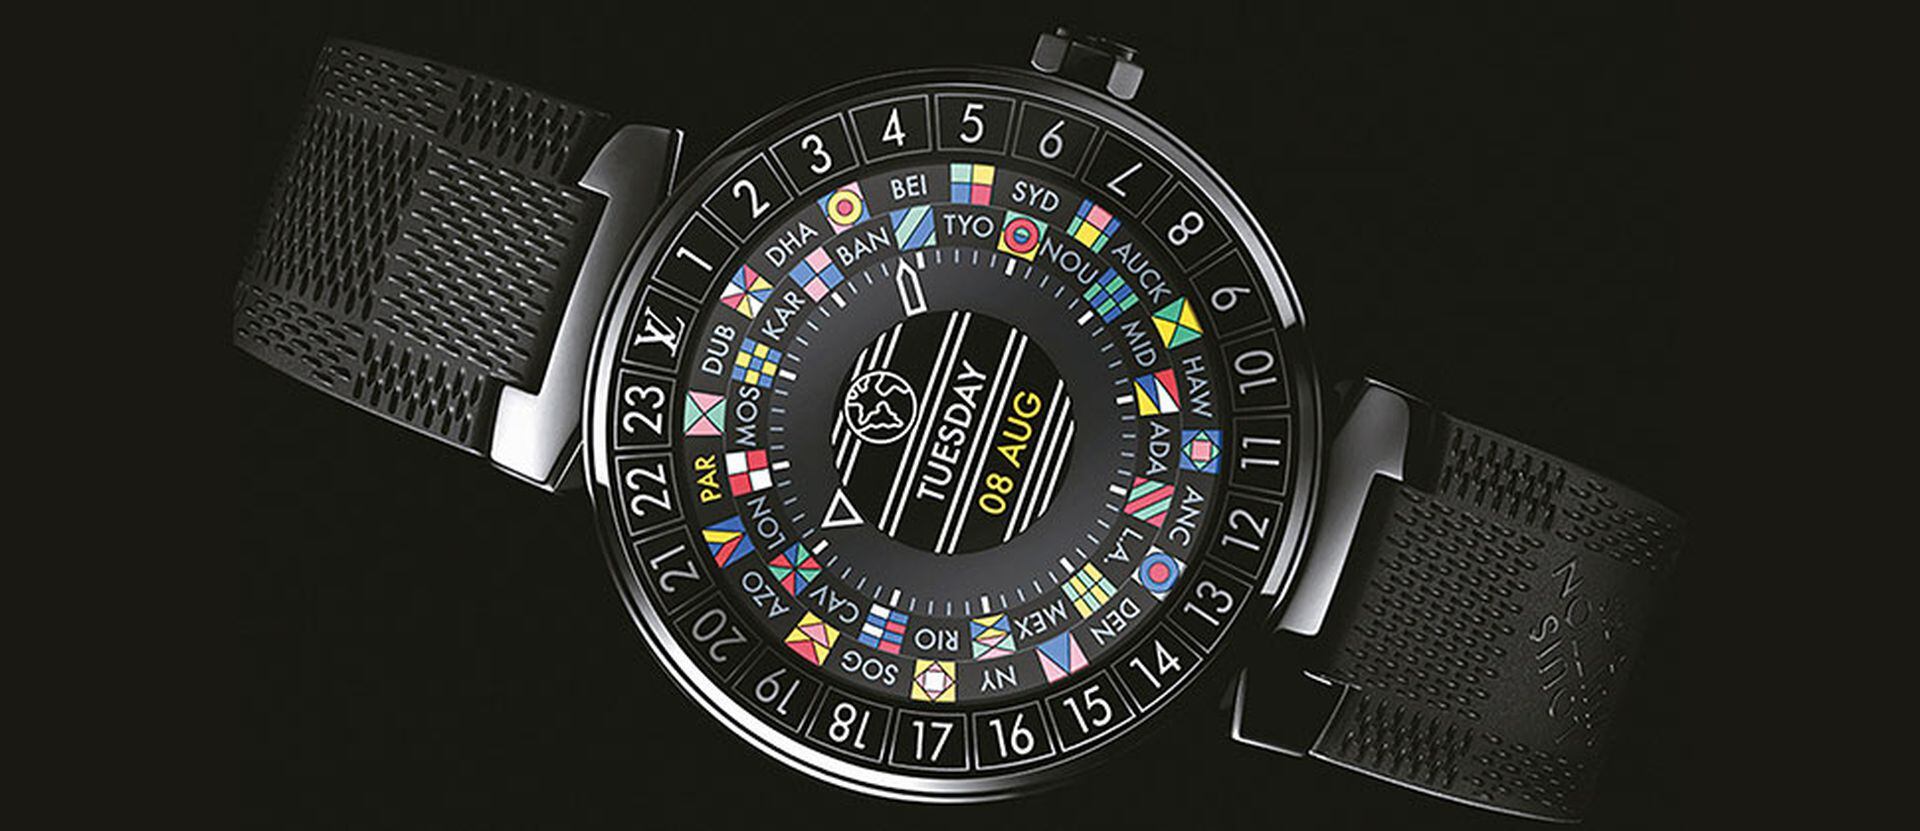 Louis Vuitton lanza un exclusivo smartwatch para viajeros